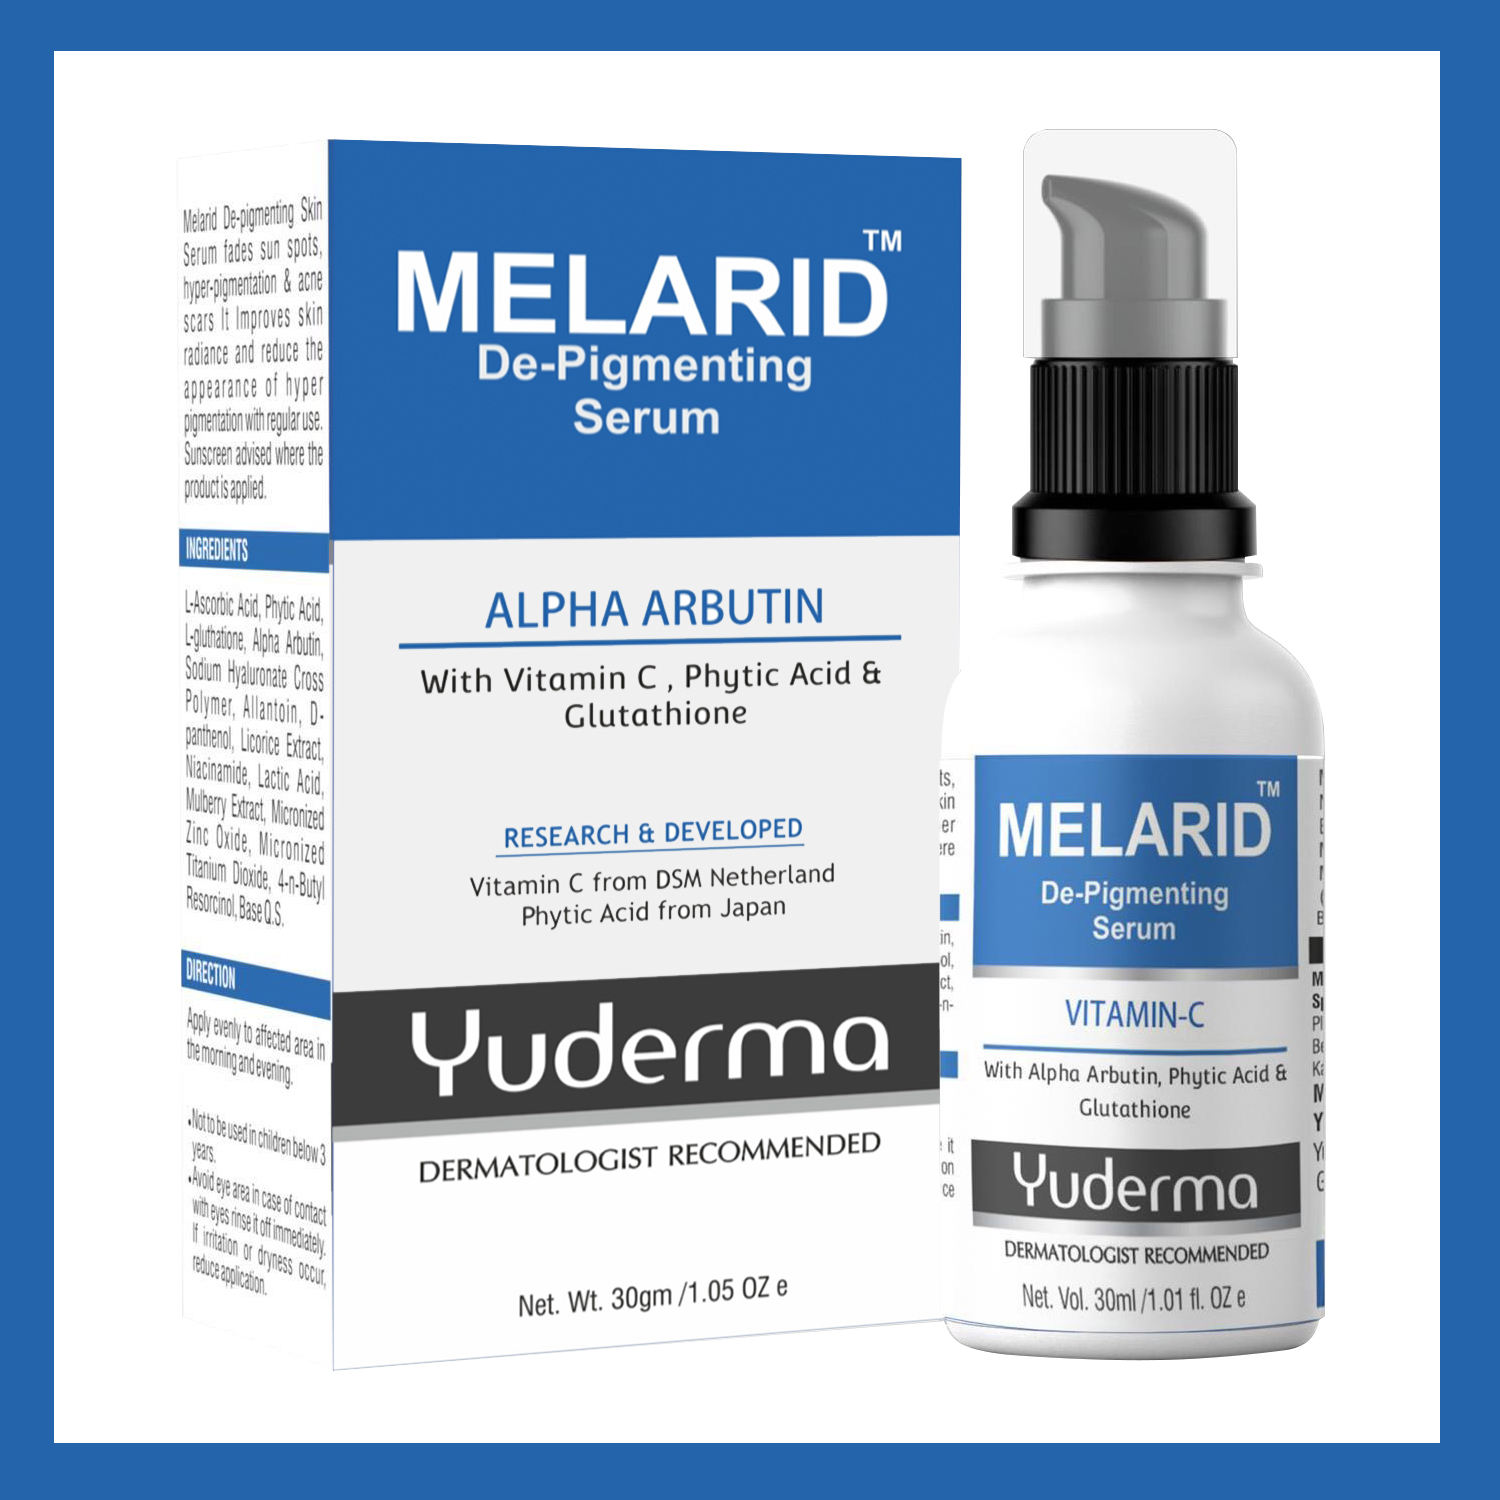 Melarid De-Pigmenting Serum